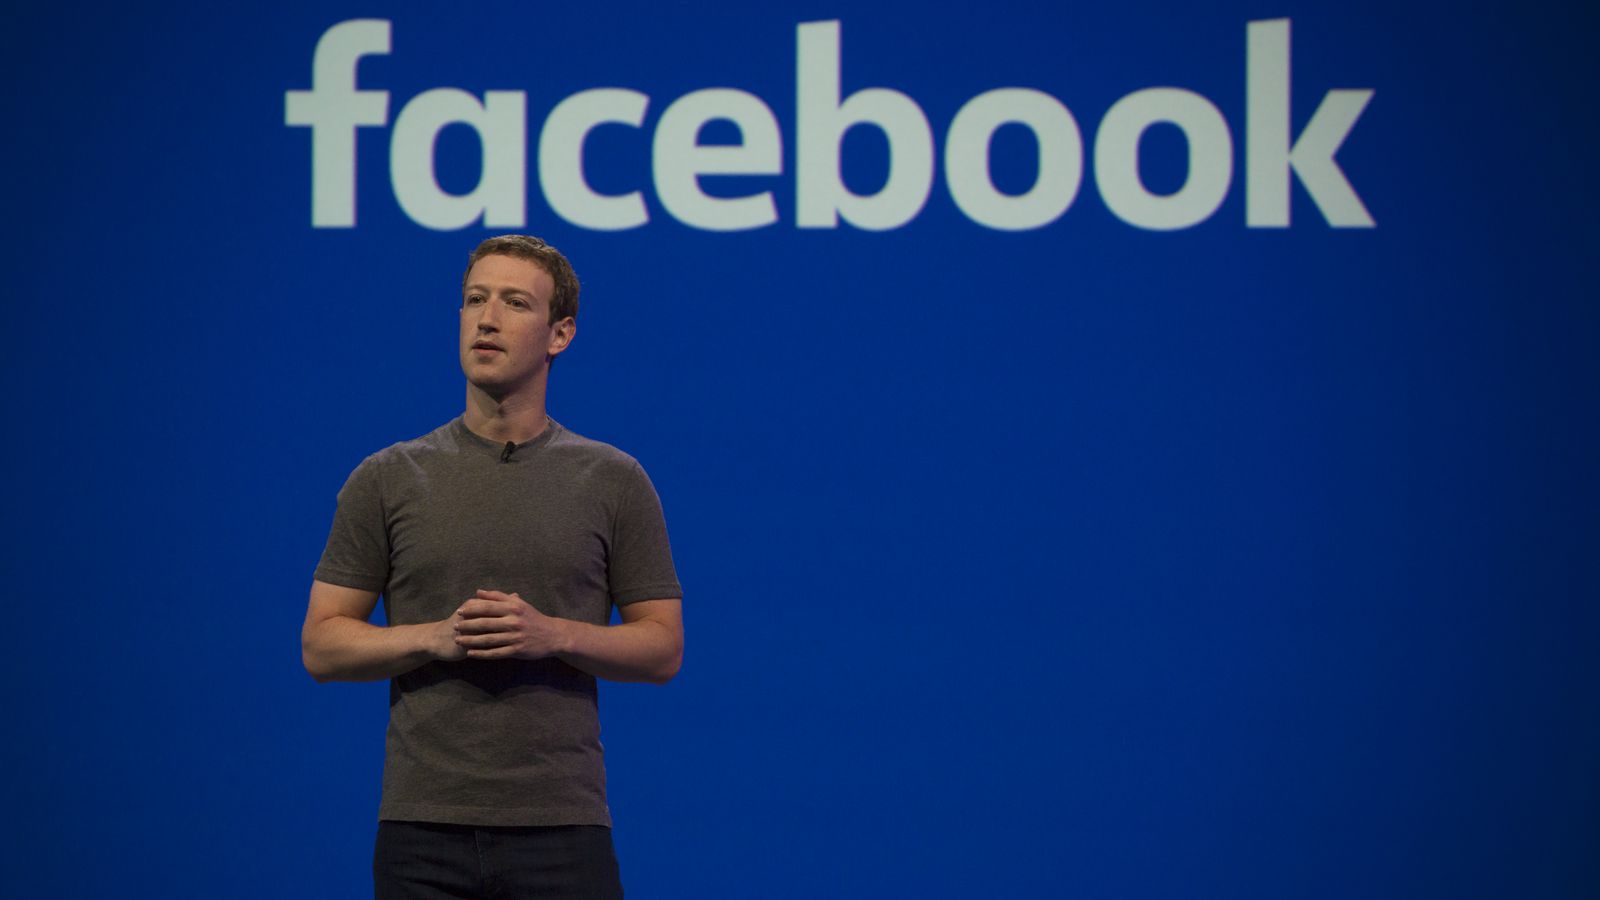 ΗΠΑ: Ο «Mr. Facebook» καταθέτει στο Κογκρέσο στις 11 Απριλίου για το σκάνδαλο της Cambridge Analytica